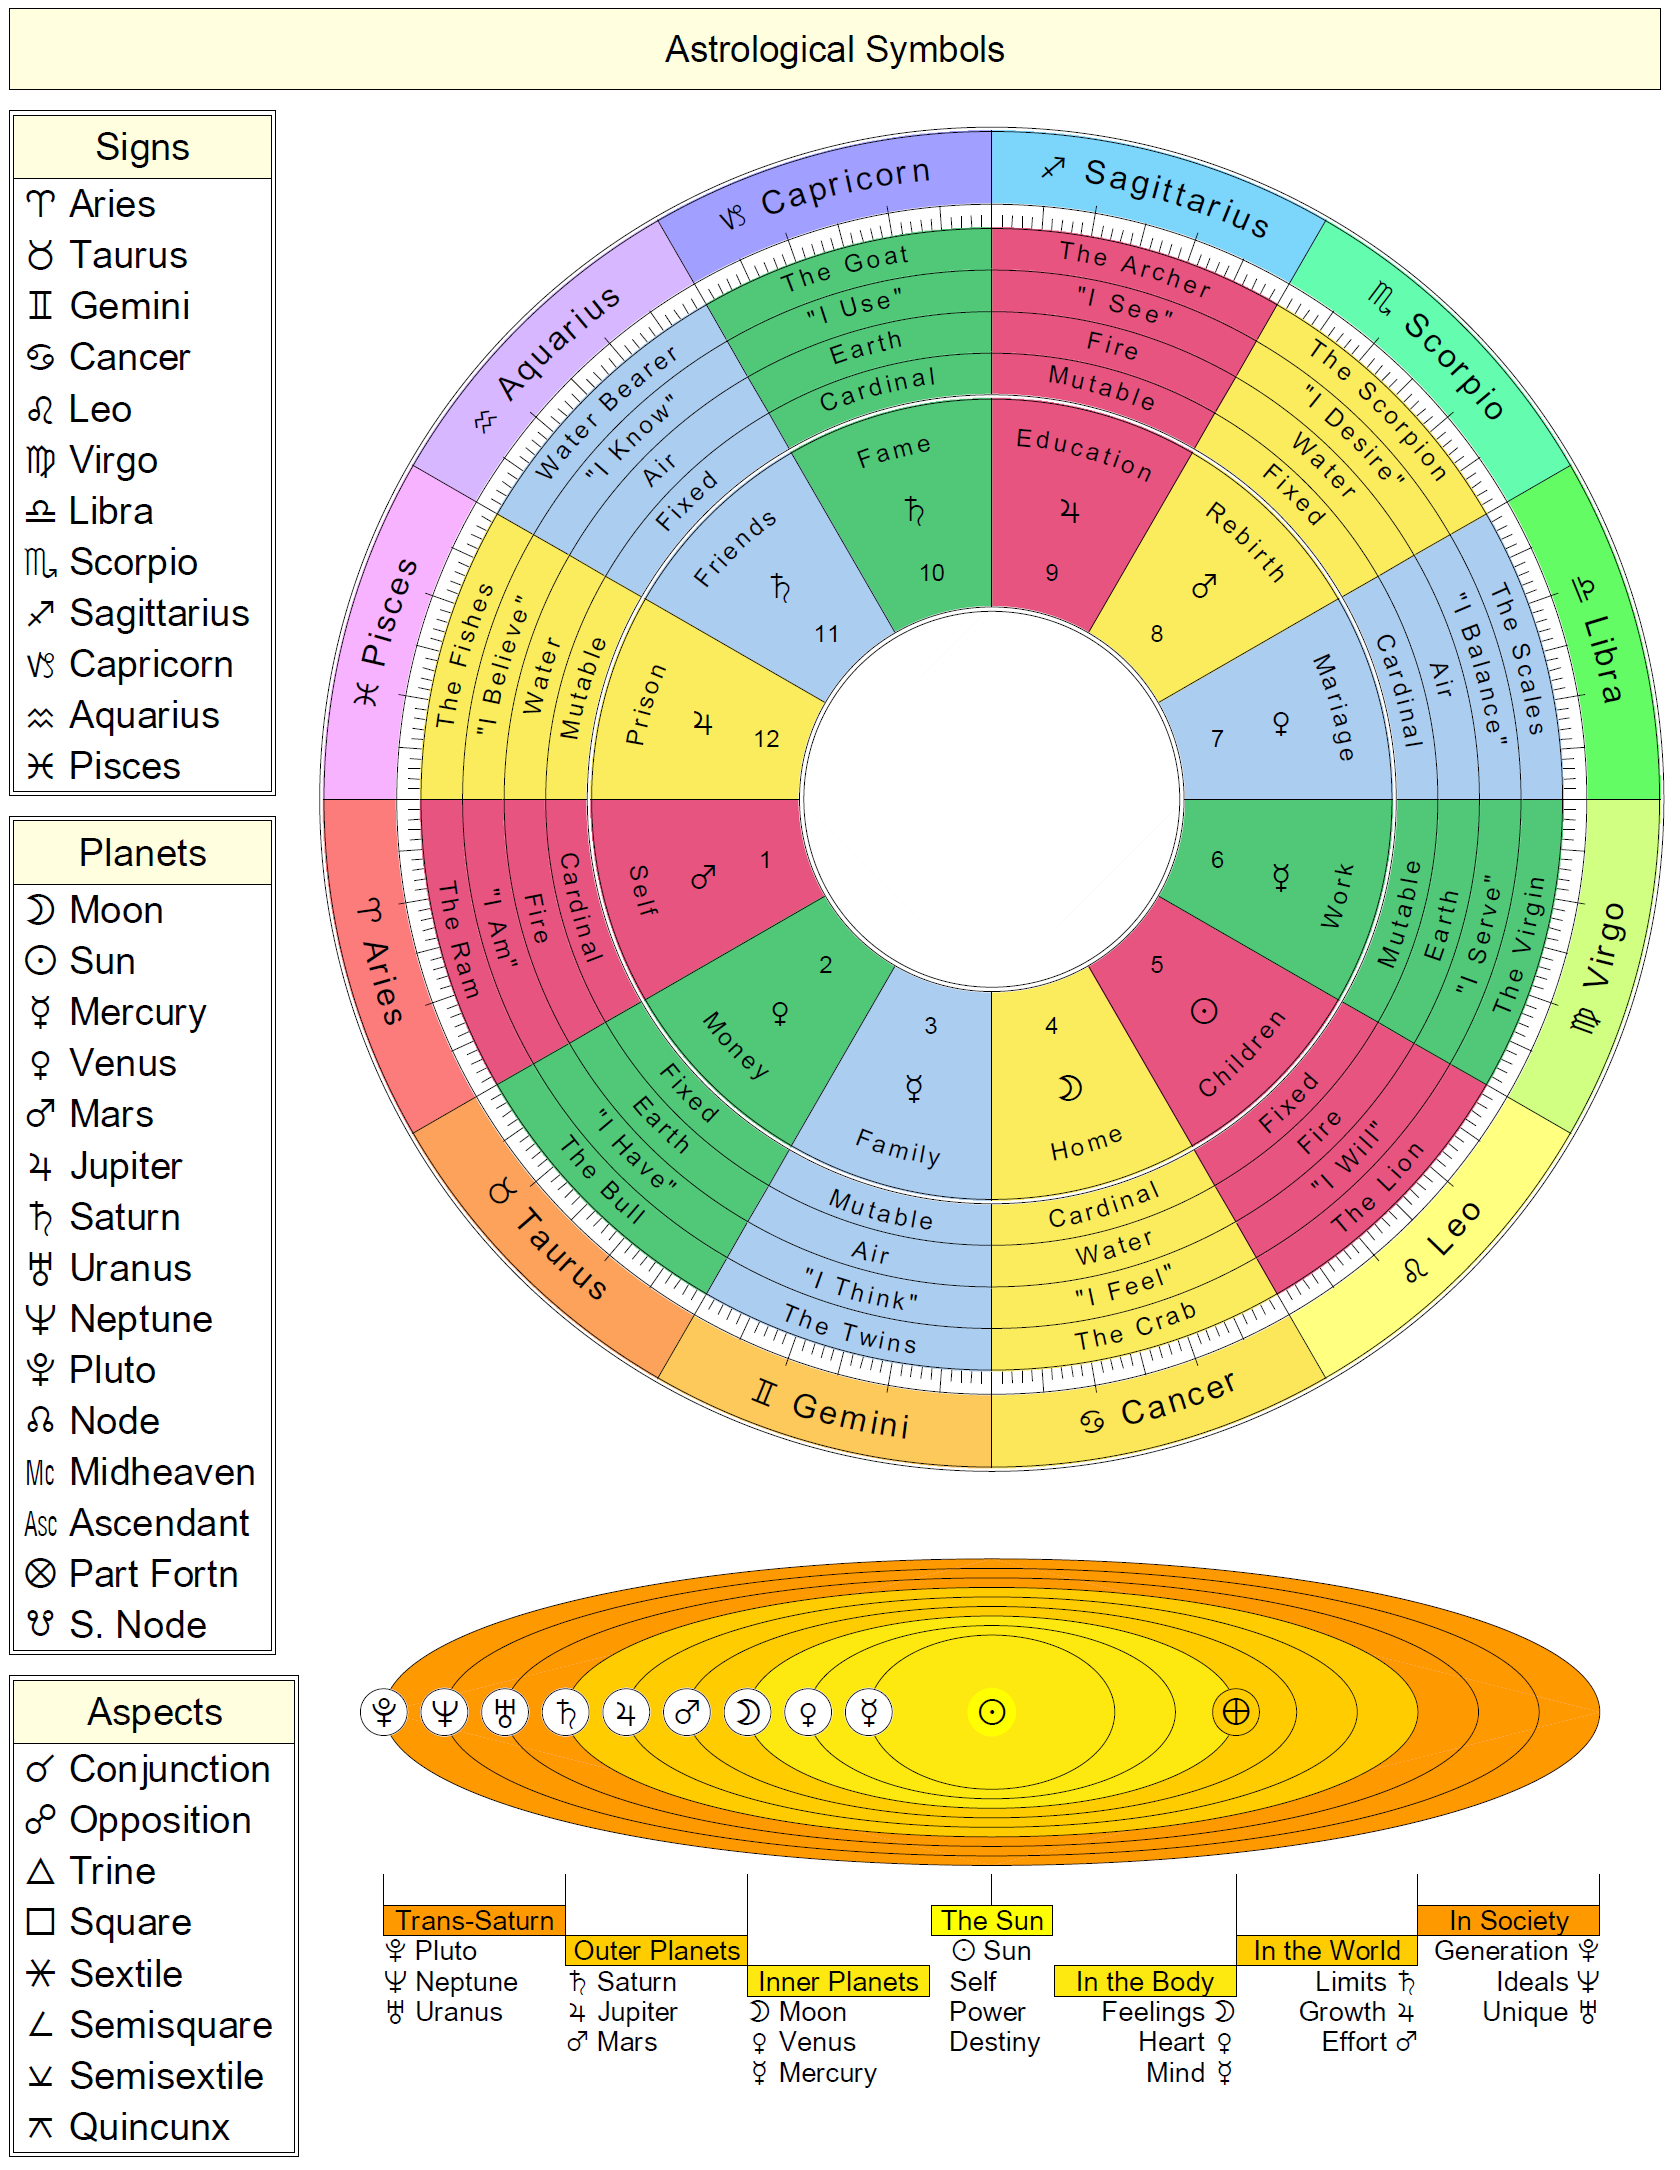 astrology chart calculator